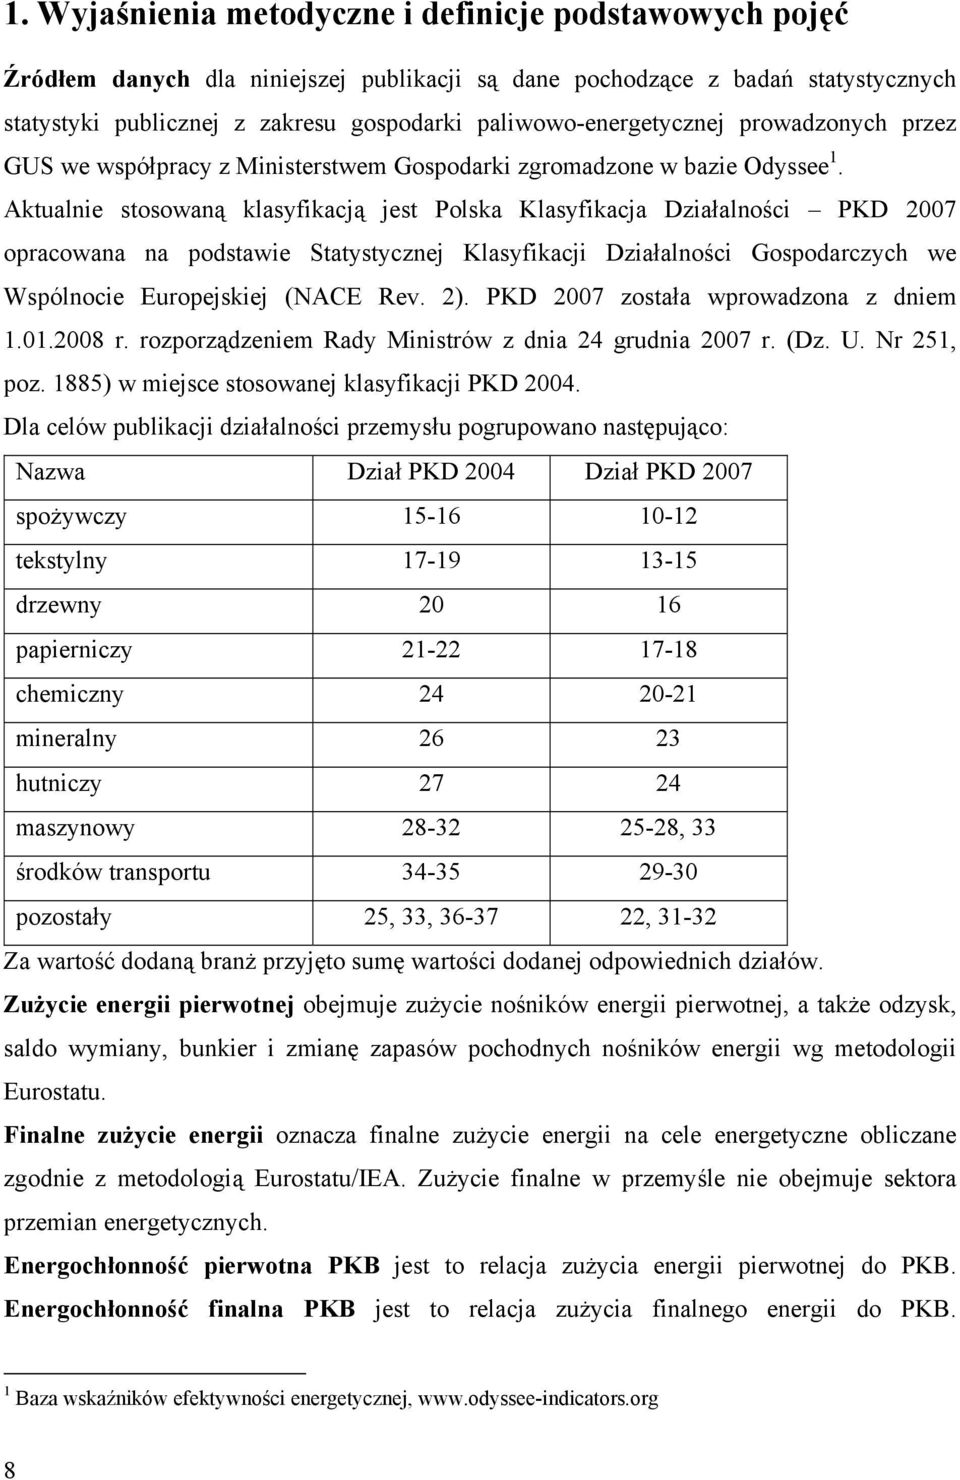 Aktualnie stosowaną klasyfikacją jest Polska Klasyfikacja Działalności PKD 2007 opracowana na podstawie Statystycznej Klasyfikacji Działalności Gospodarczych we Wspólnocie Europejskiej (NACE Rev. 2).